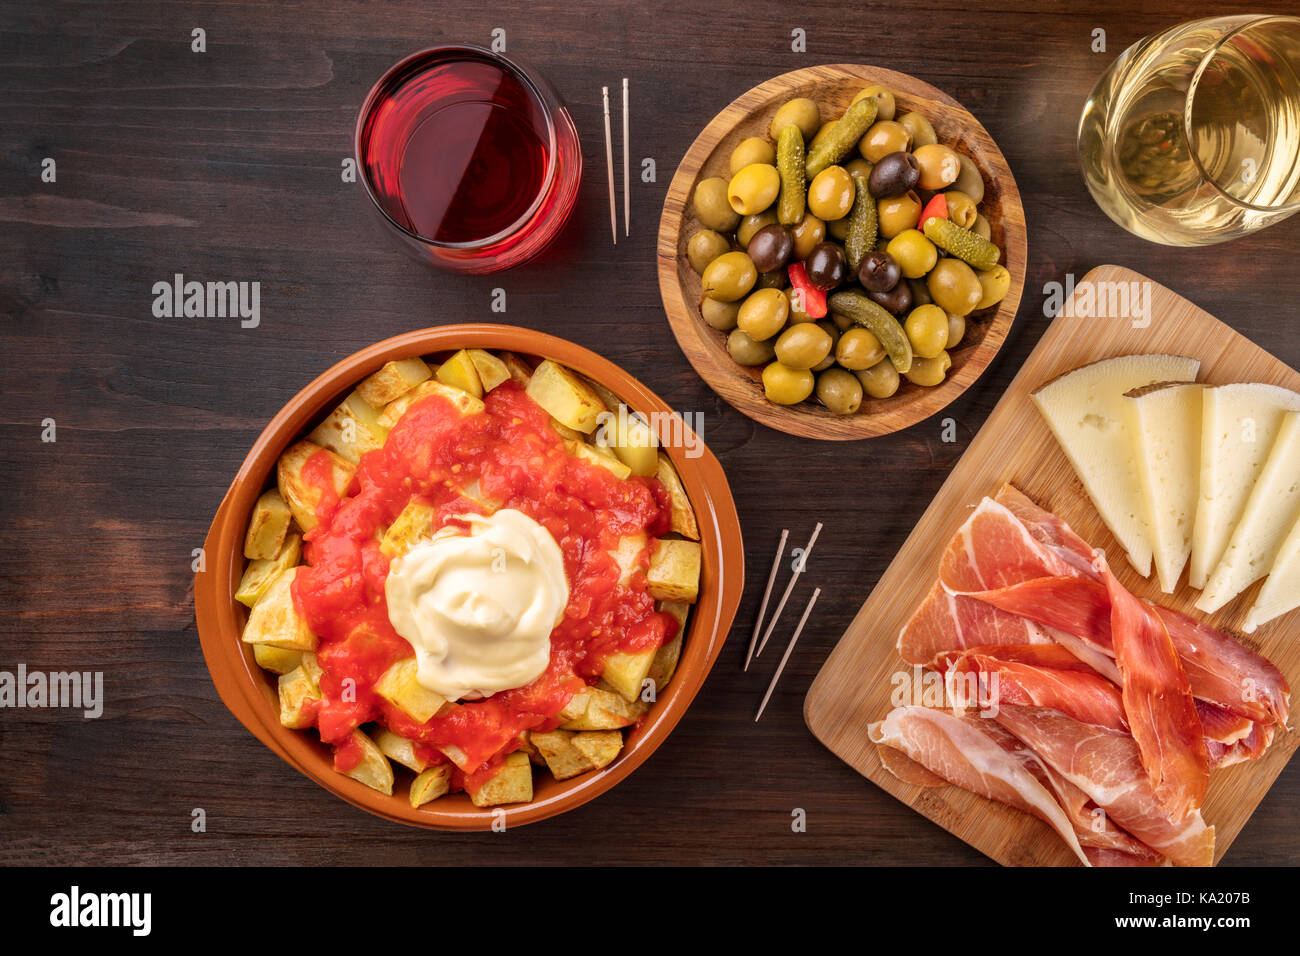 Tapas and wine. Patatas bravas, olives, jamon, cheese Stock Photo